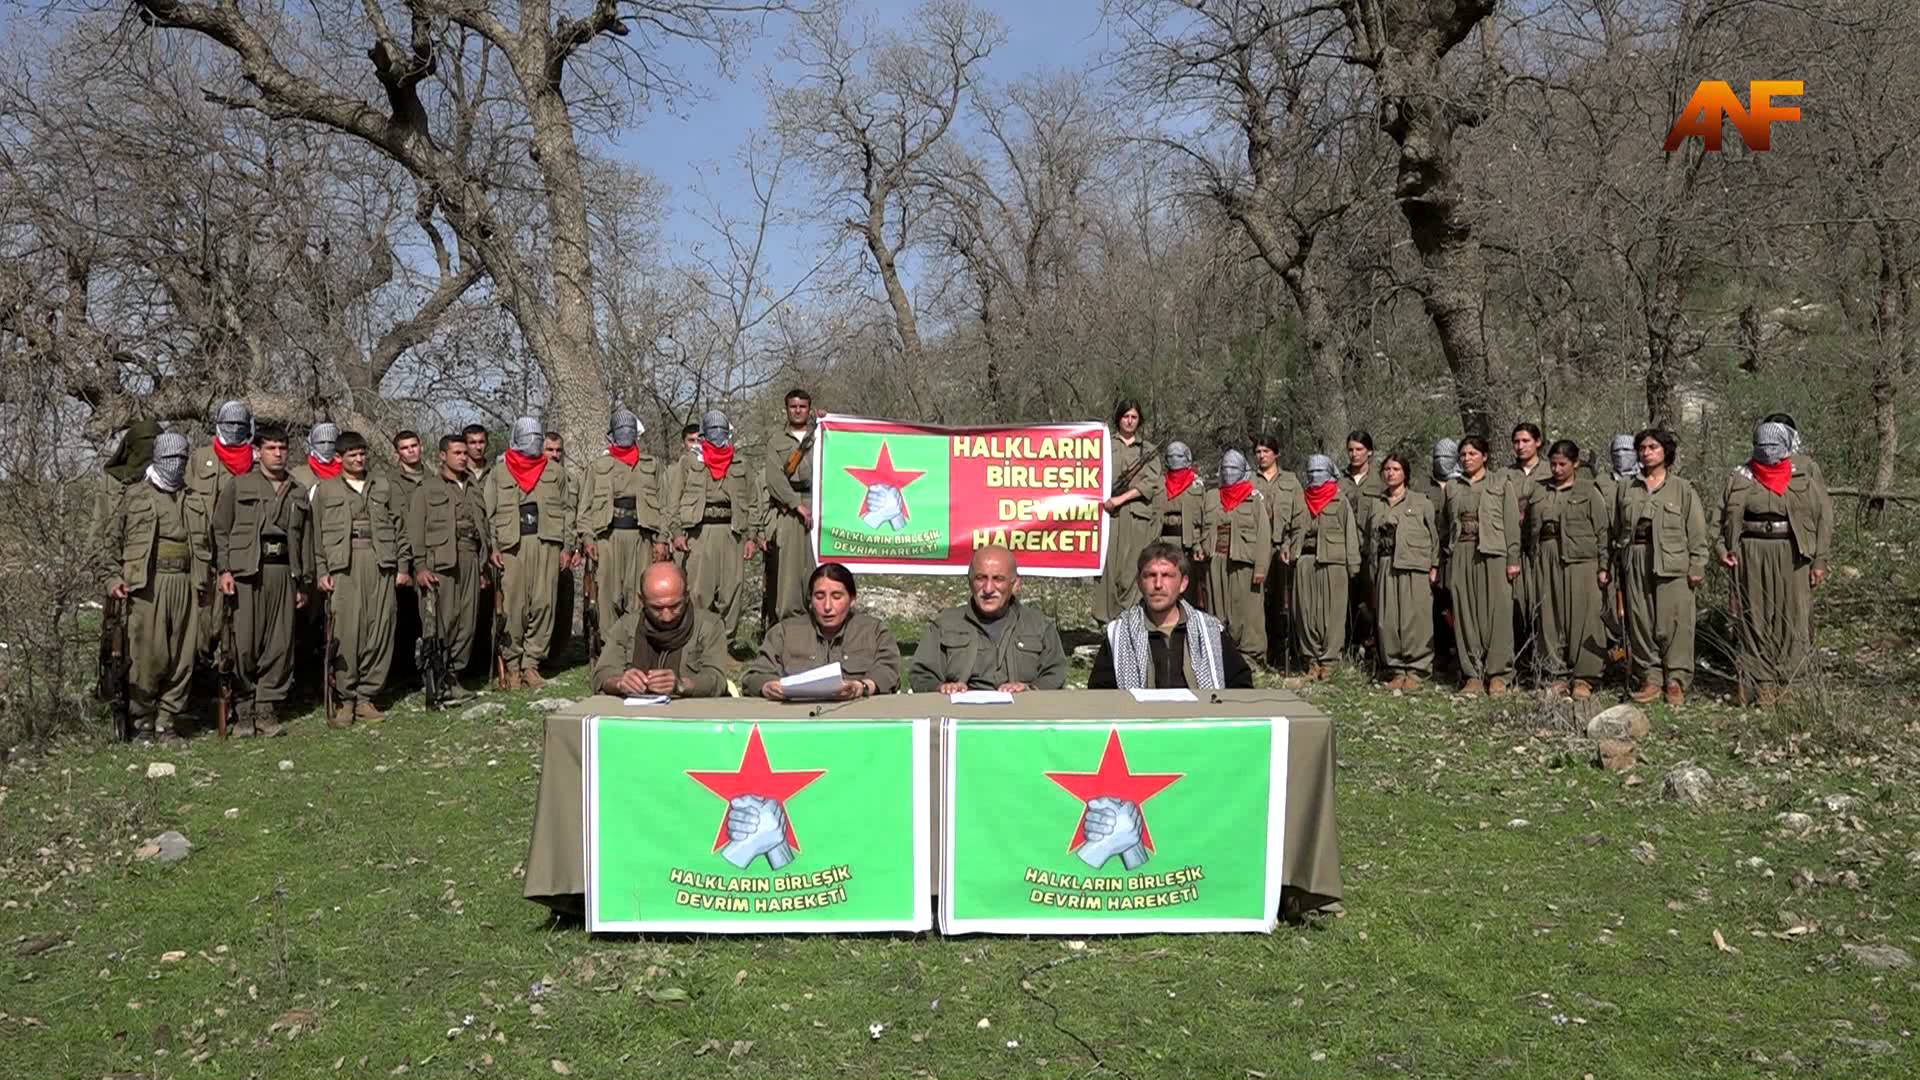 Turkish leftist groups fighting for PKK/YPG